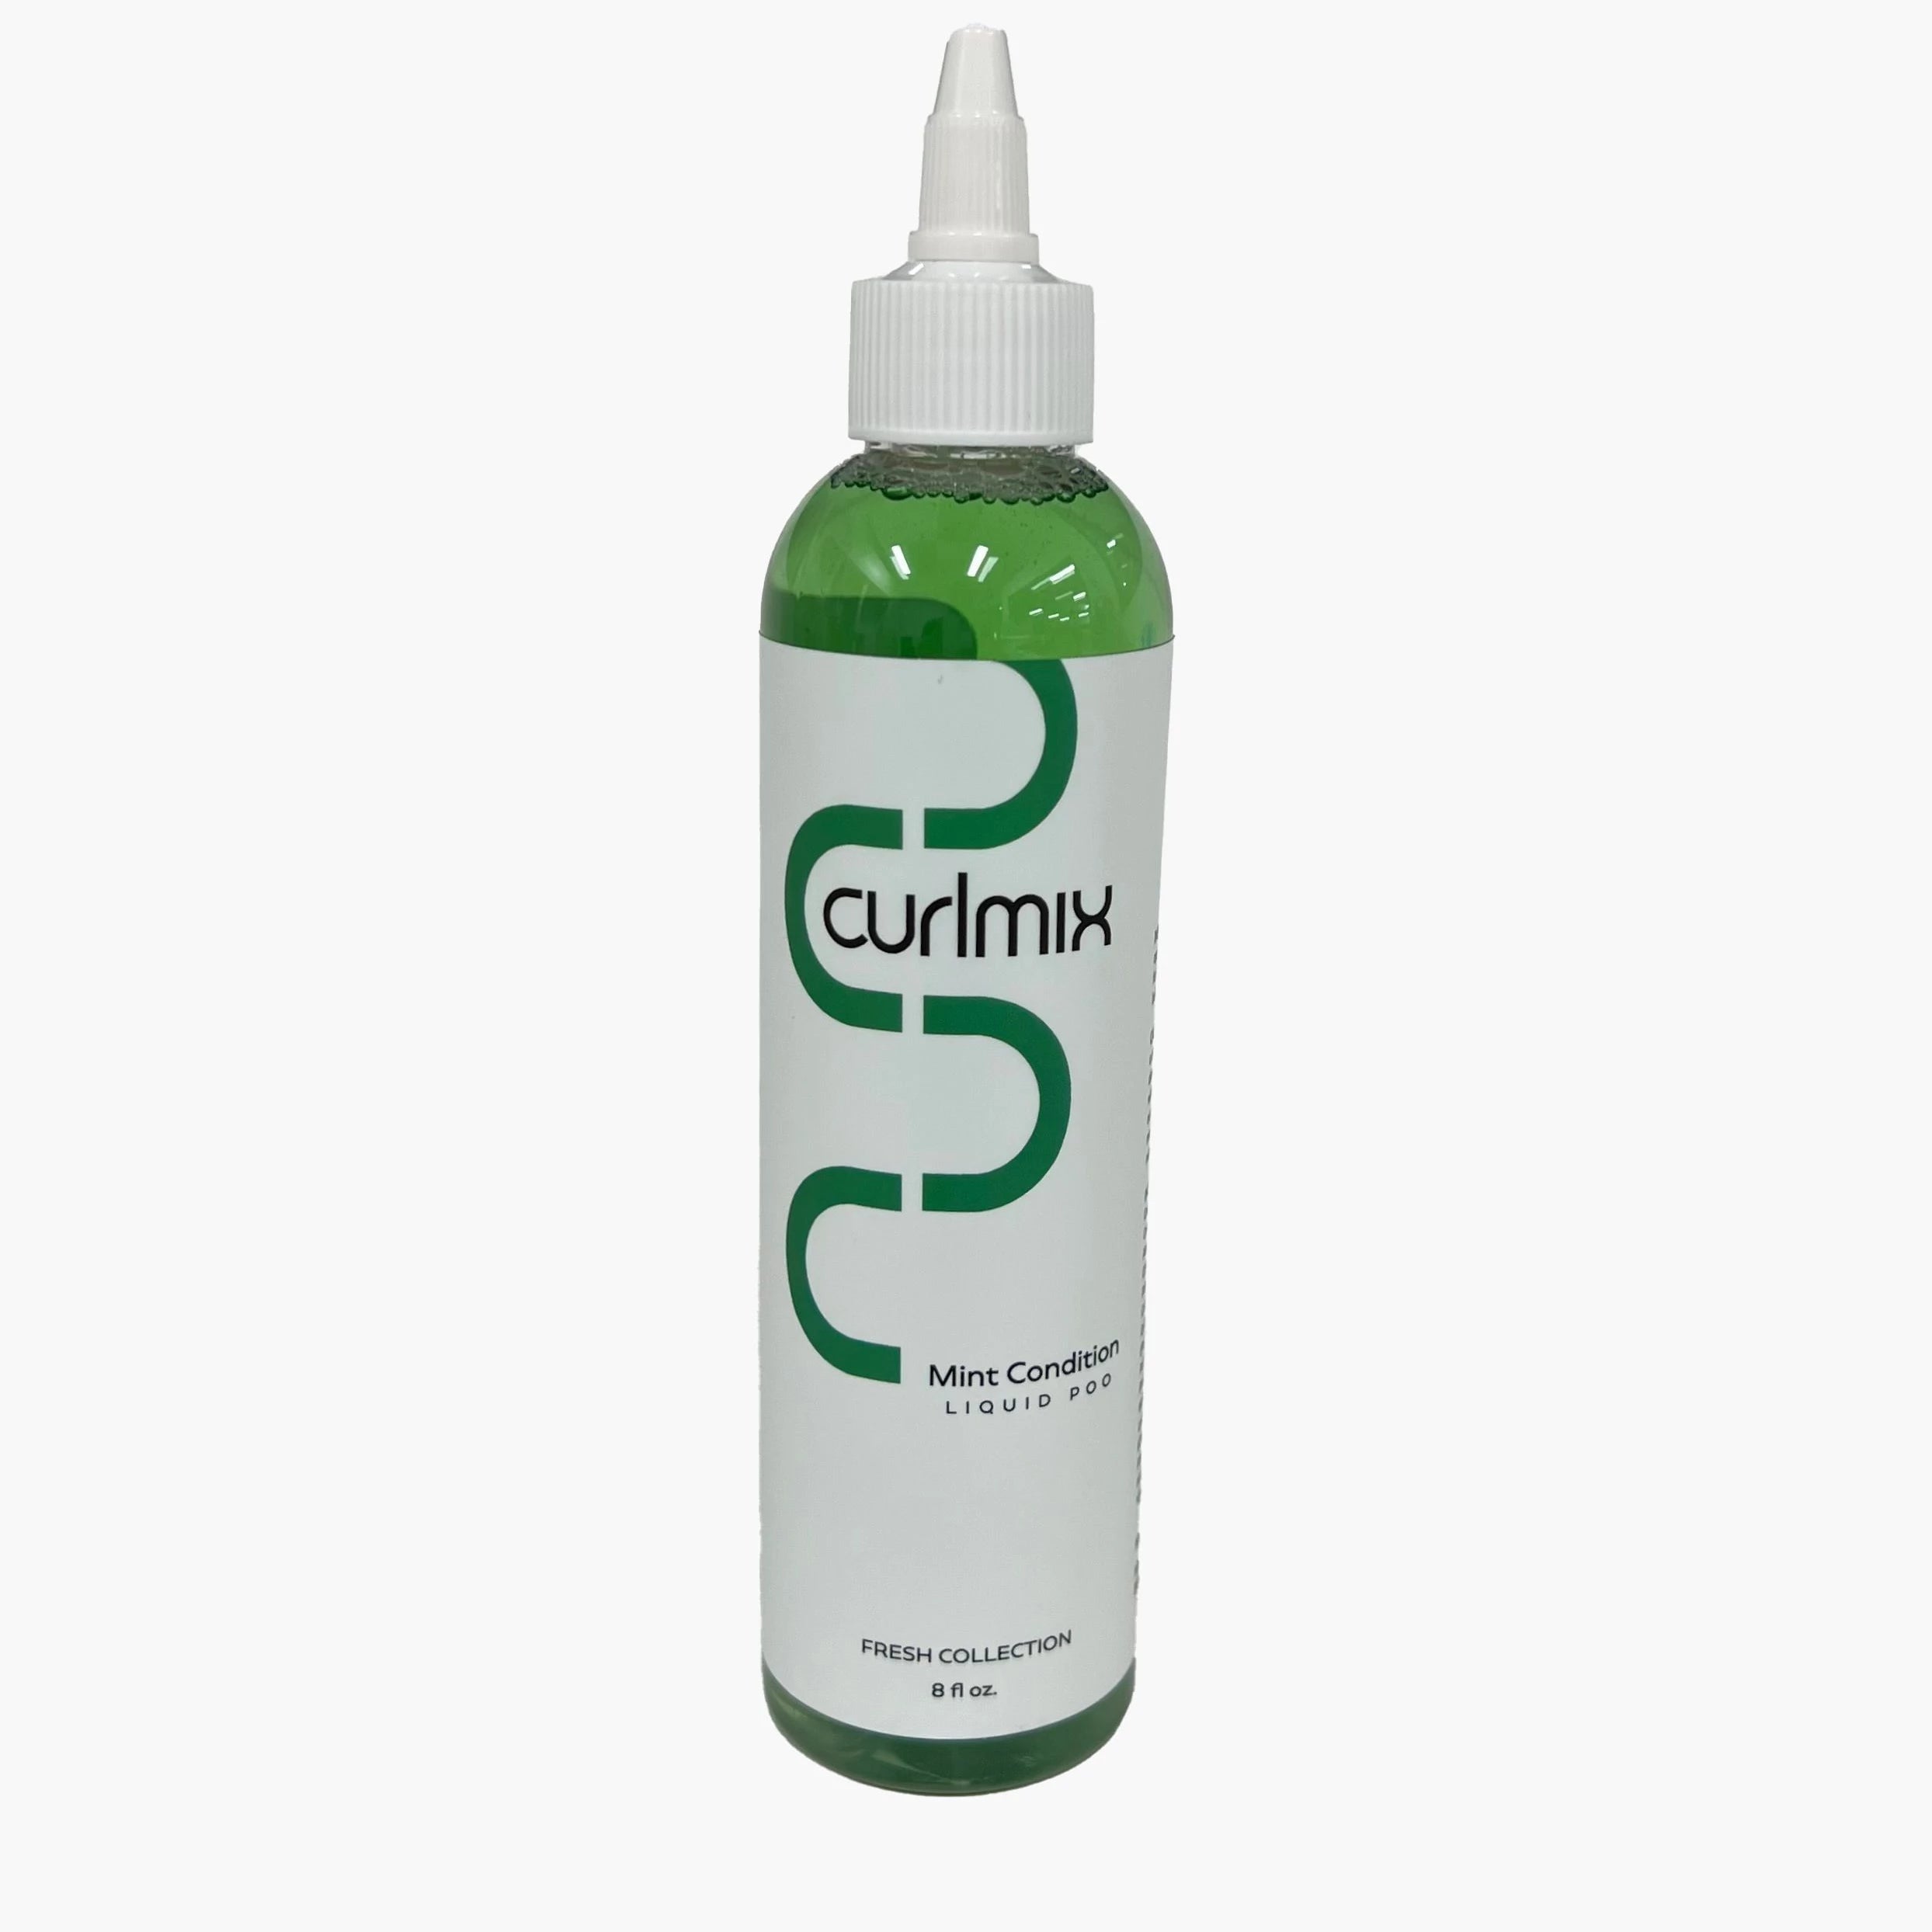 Mint Condition Liquid Poo - CurlMix Fresh